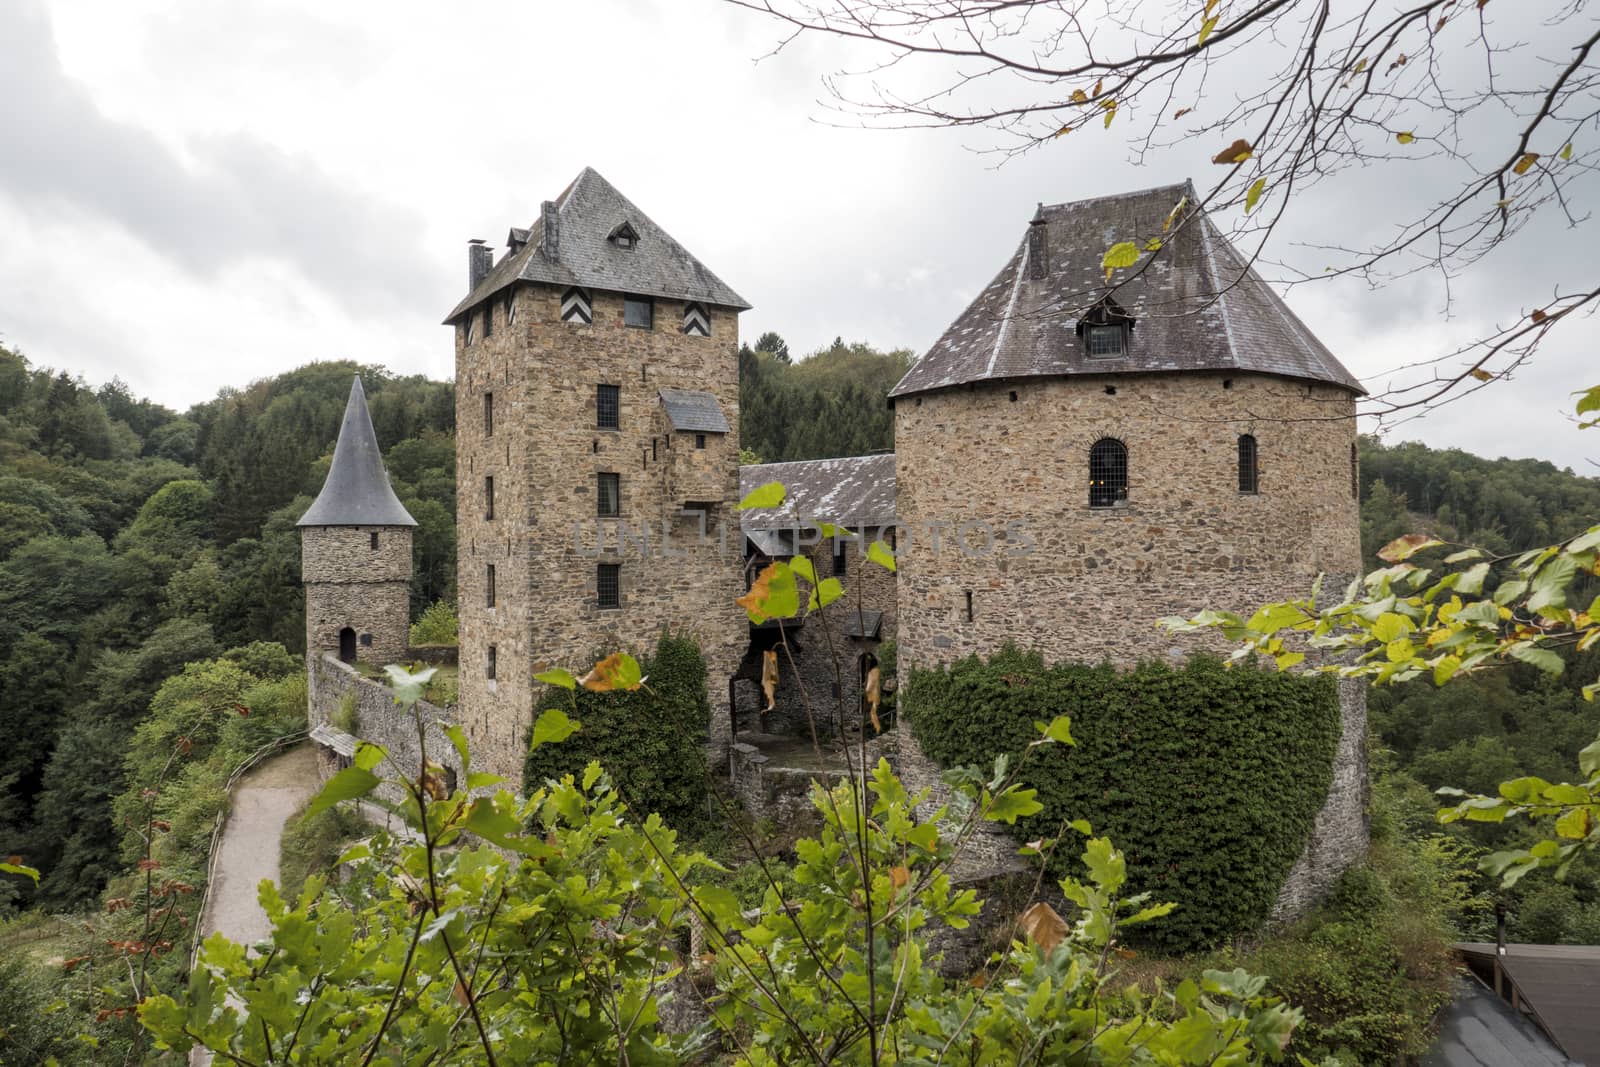 Castle Reinhardstein near Robertville village in Belgium. Belgian Ardennes region